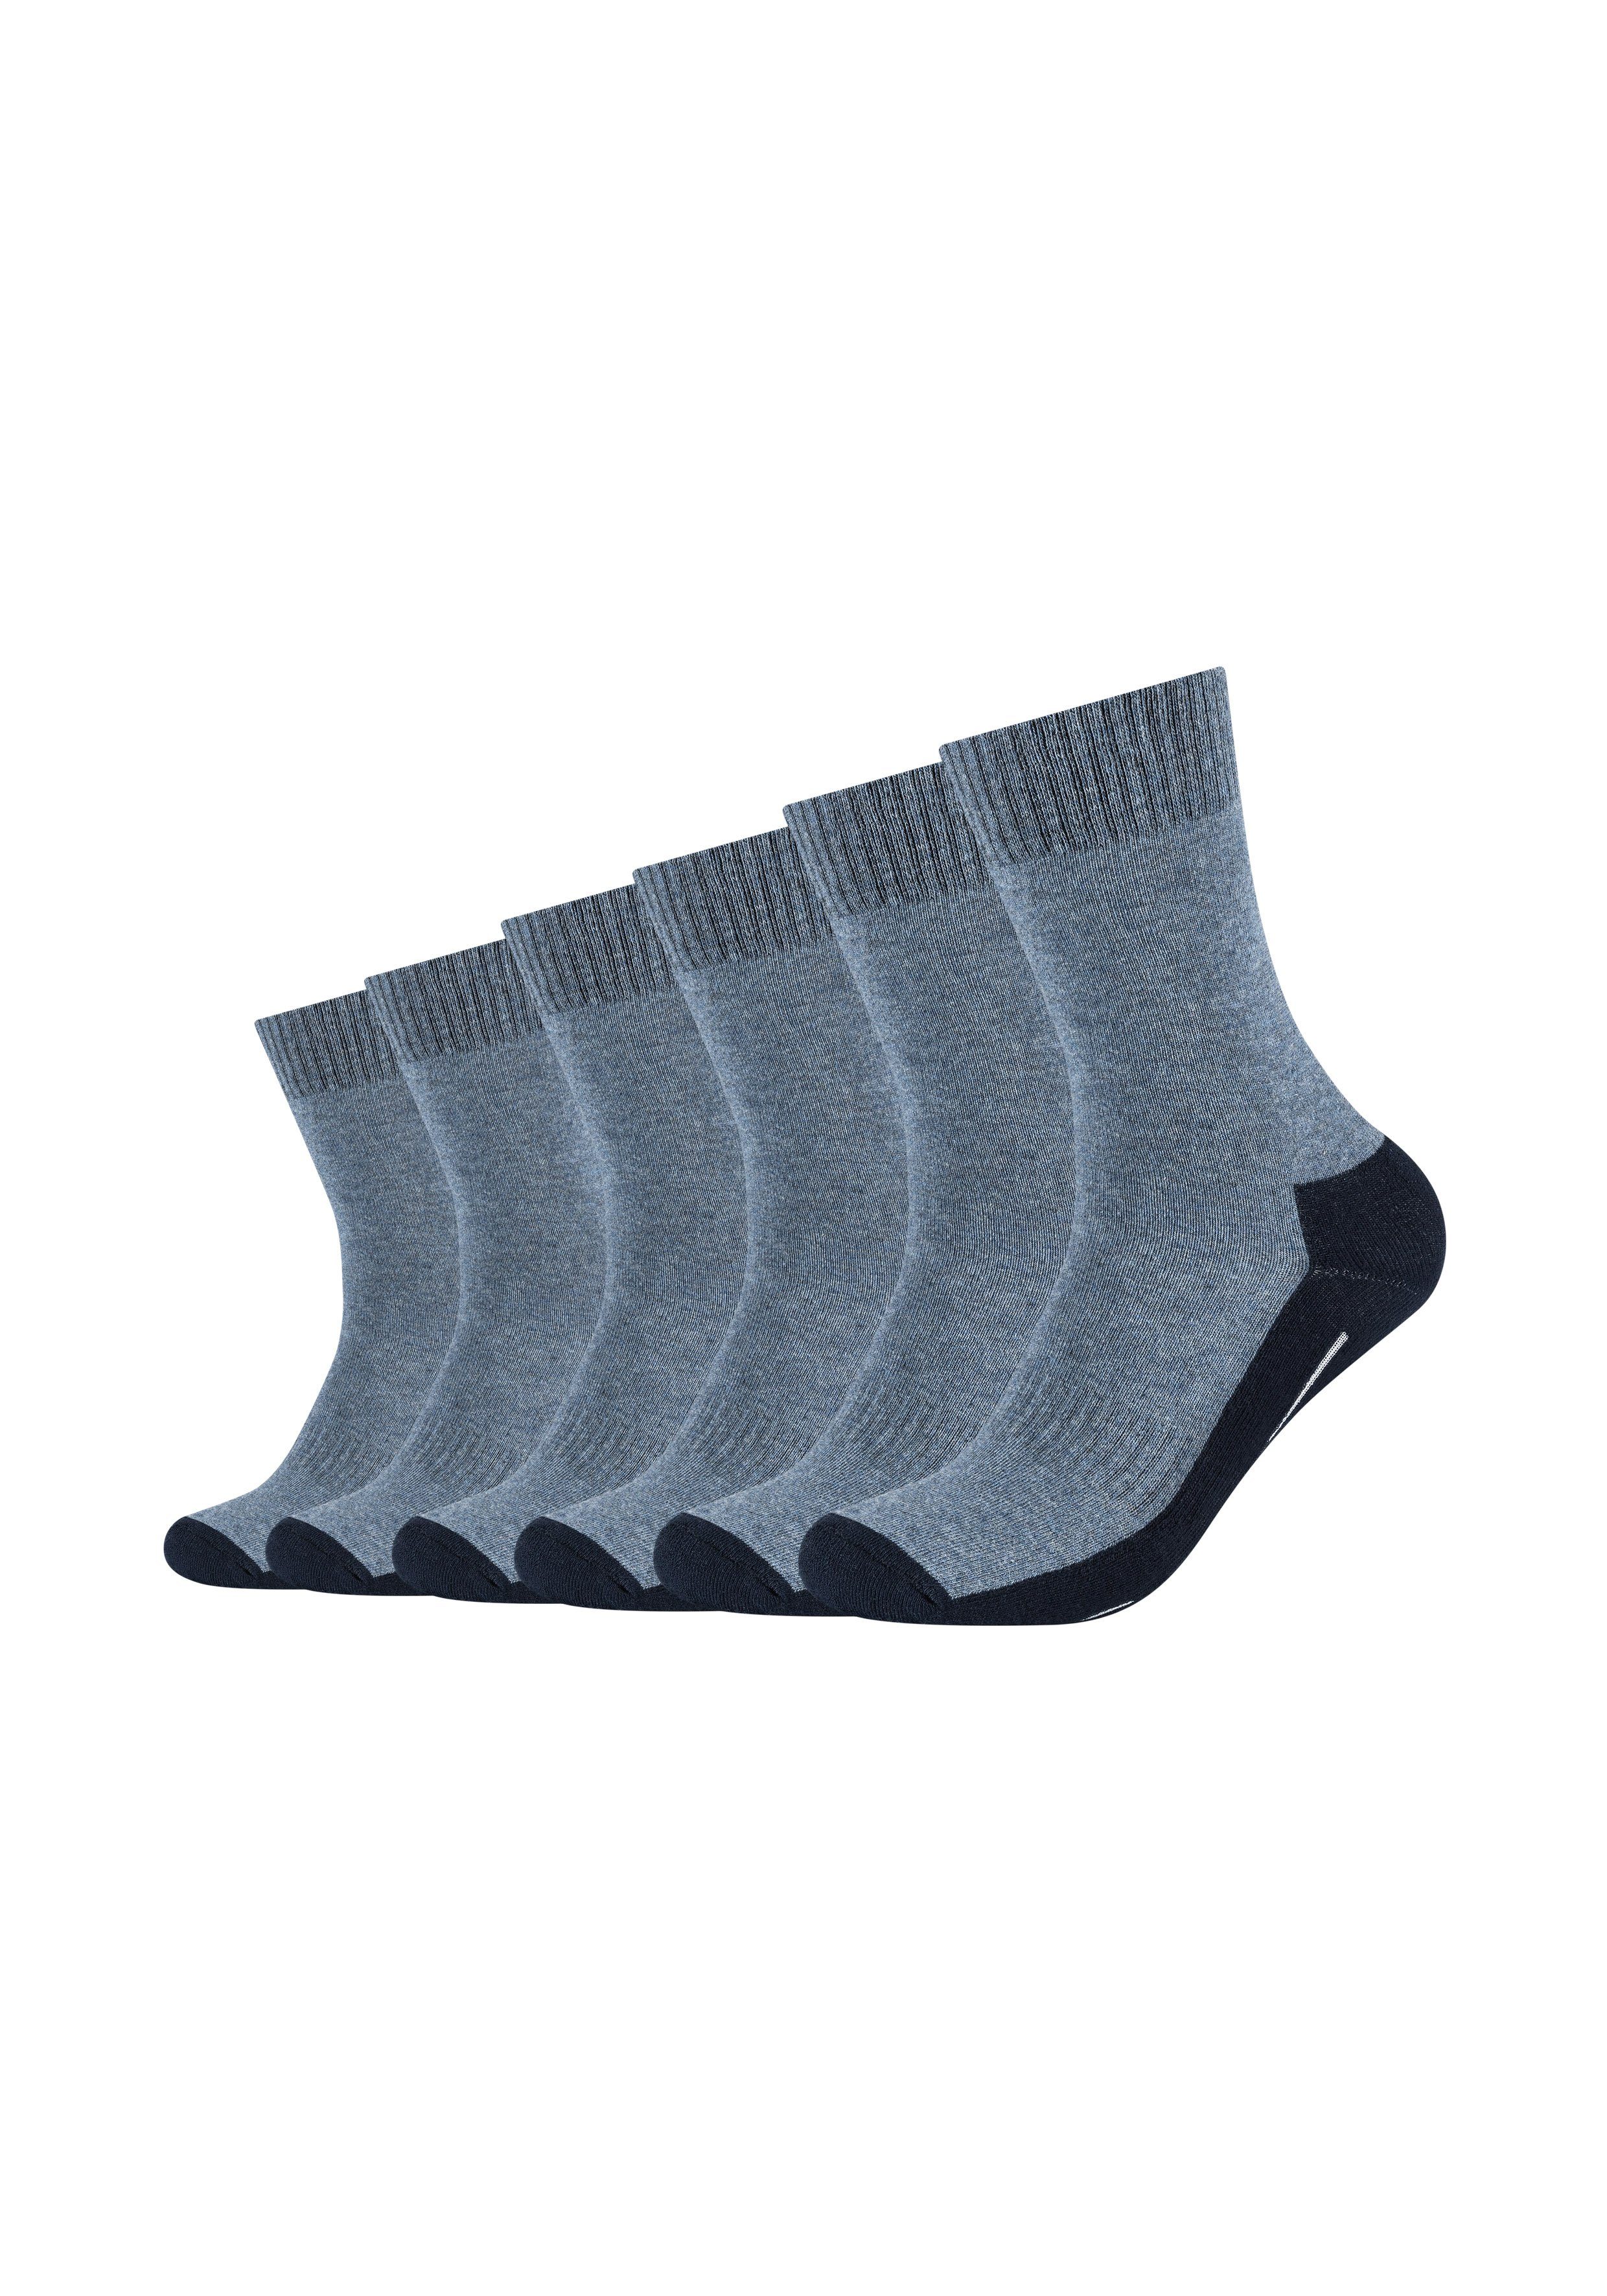 Wäsche/Bademode Socken Camano Socken Pro Tex Function (6-Paar) im praktischen 6er-Pack